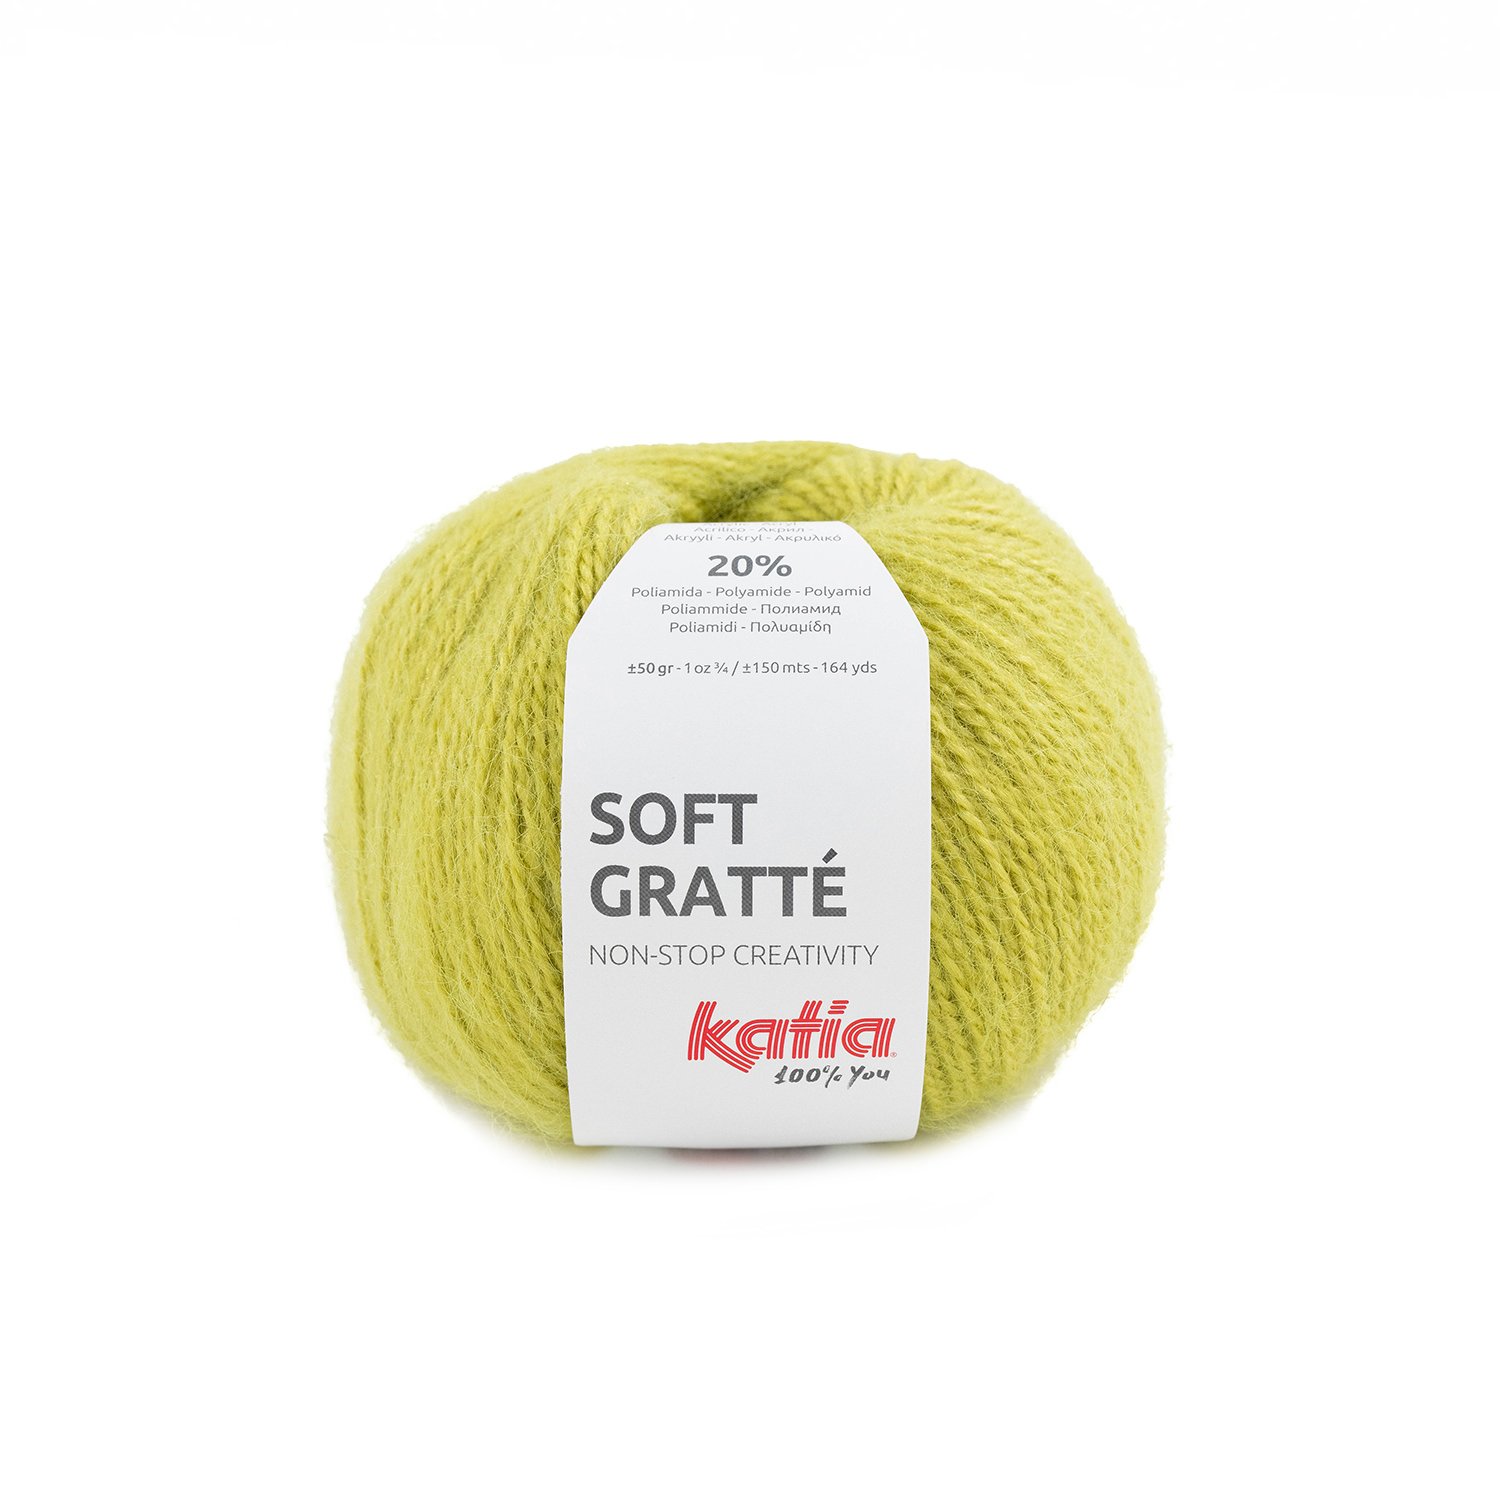 62 laine-fil-softgratte-tricoter-acrylique-polyamide-jaune-citron-automne-hiver-katia-62-fhd